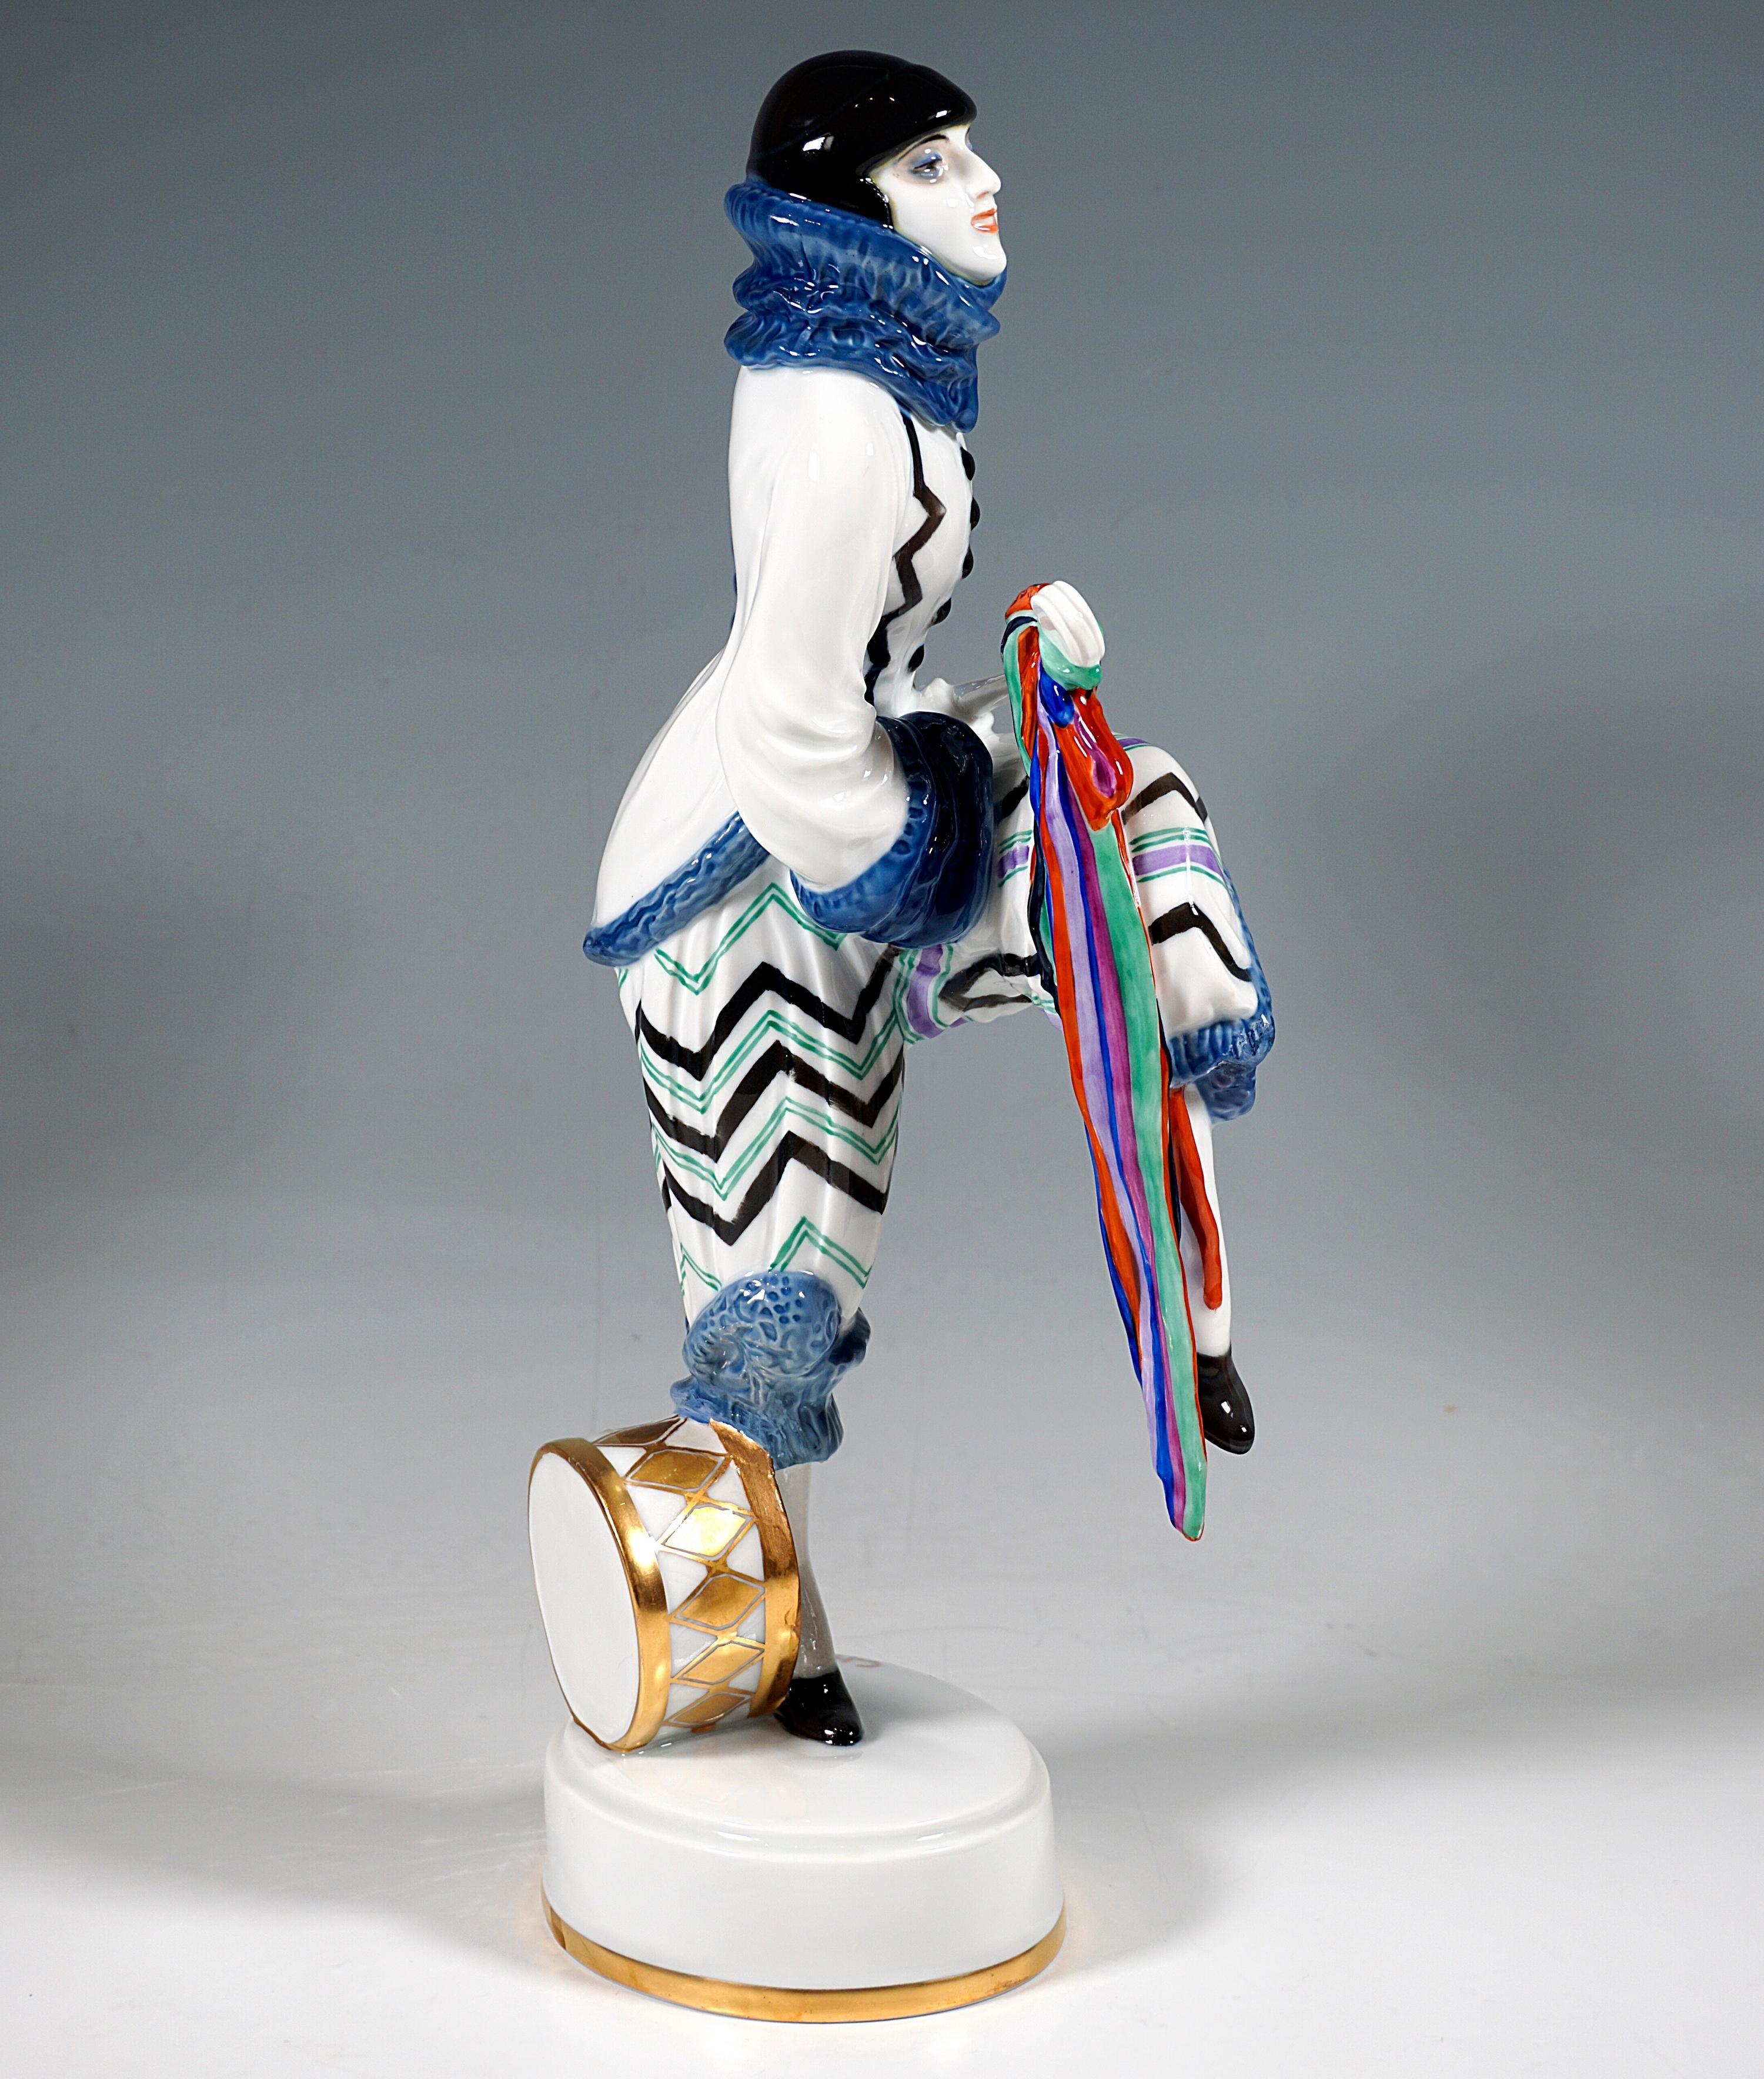 Très rare figurine en porcelaine d'après la danseuse Lena Amsel :
Danseuse en costume exotique de Pierrot avec un motif en zigzag, de grandes manchettes à volants et un col haut assorti, posant au pas, une jambe levée et jouant d'un luth avec un